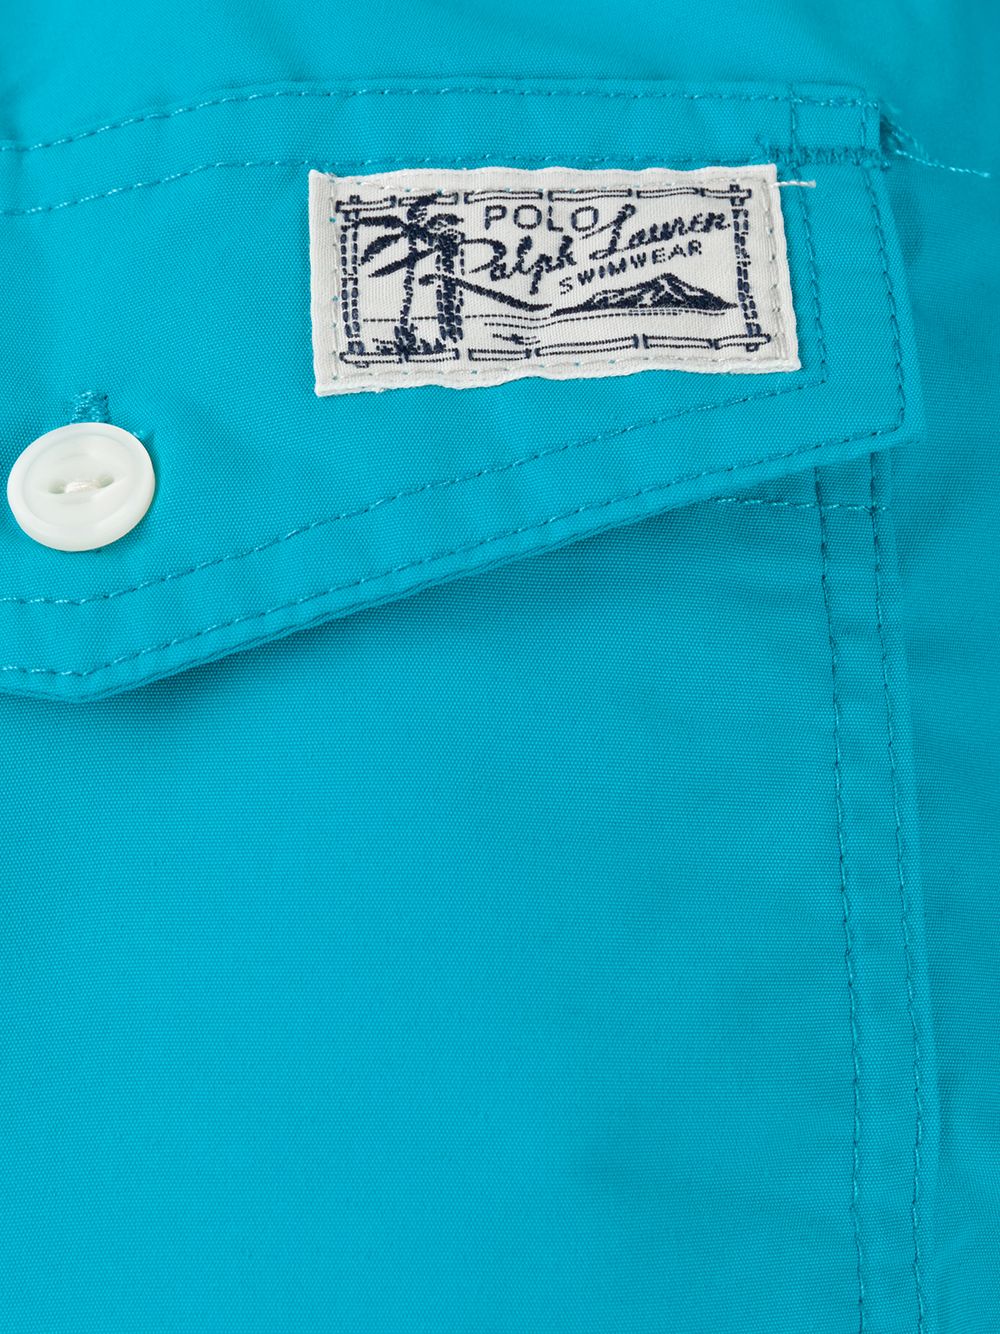 фото Polo ralph lauren спортивные шорты с вышитым логотипом